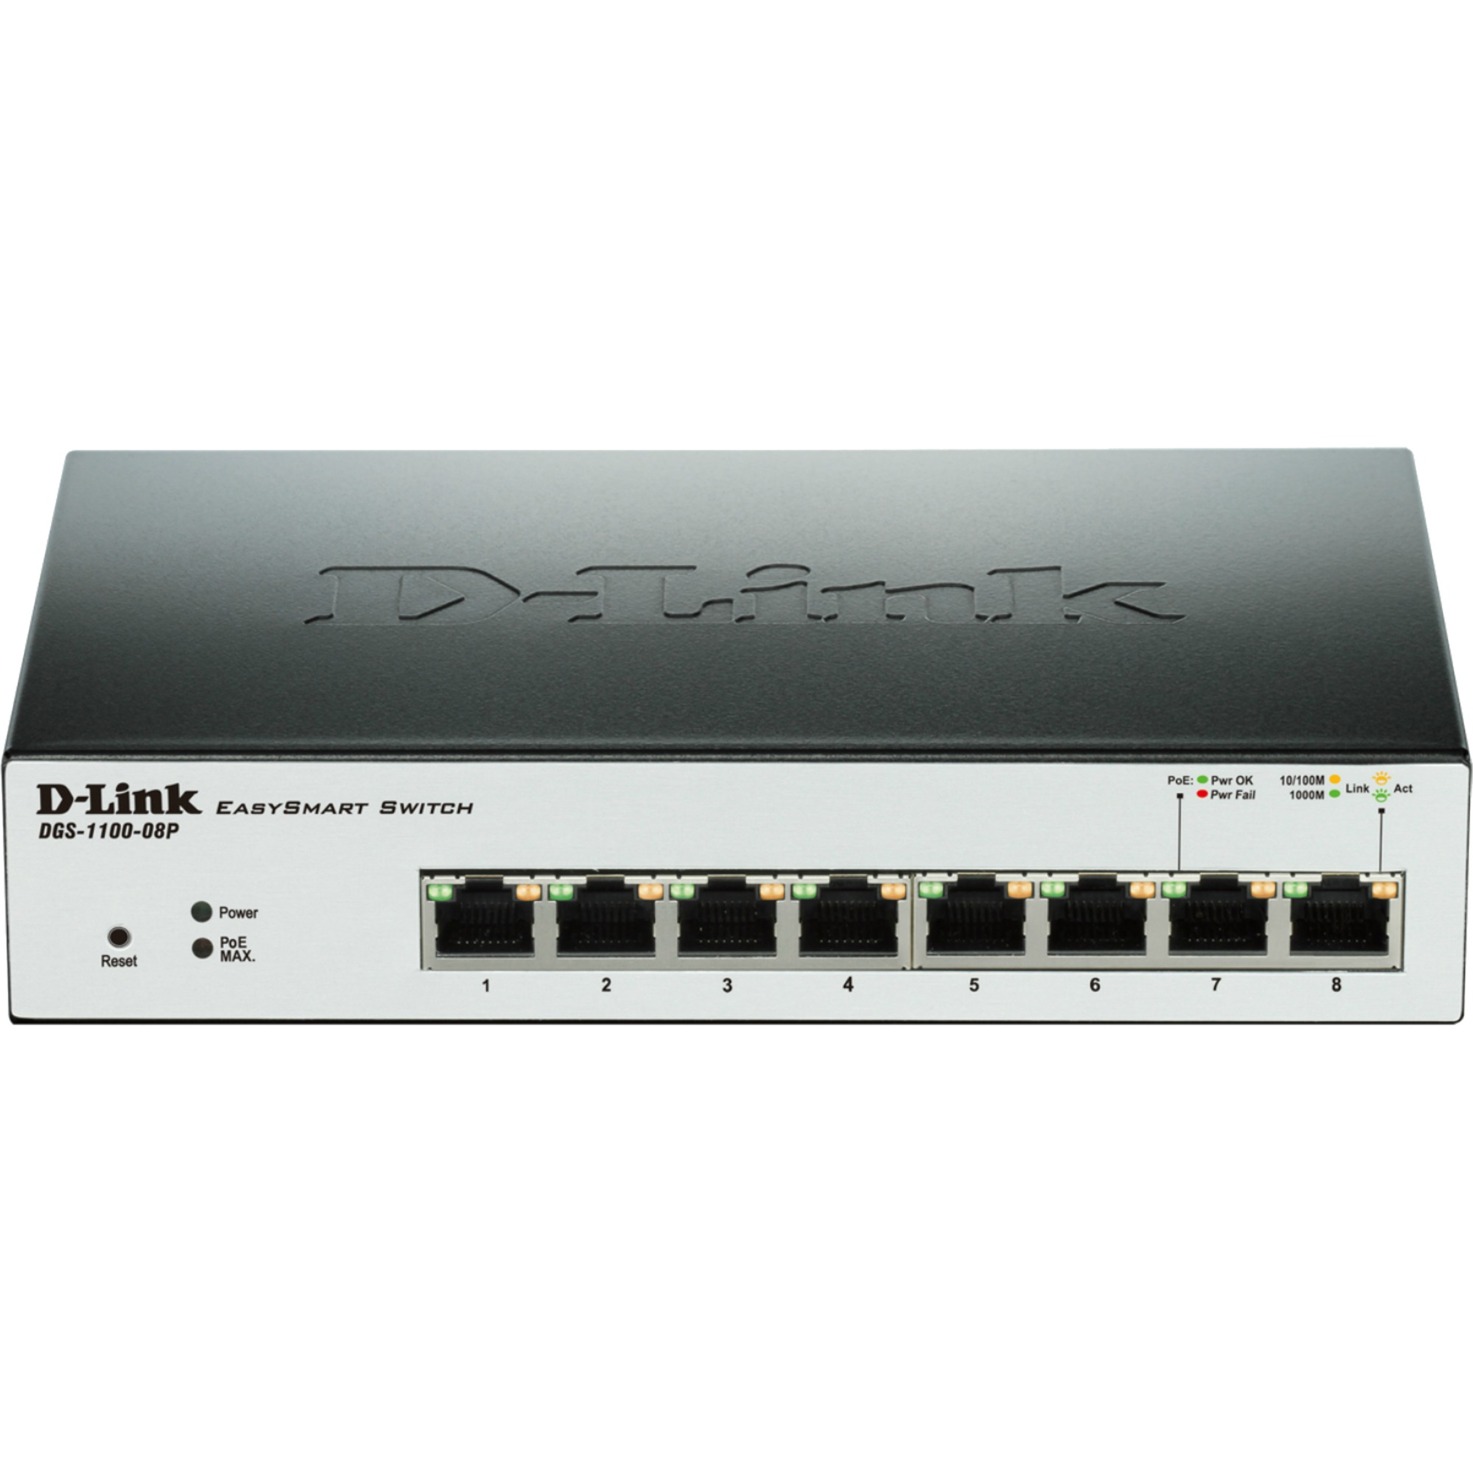 DGS-1100-08P ??cza sieciowe L2 Gigabit Ethernet (10/100/1000) Czarny Obs?uga PoE, Prze??cznik